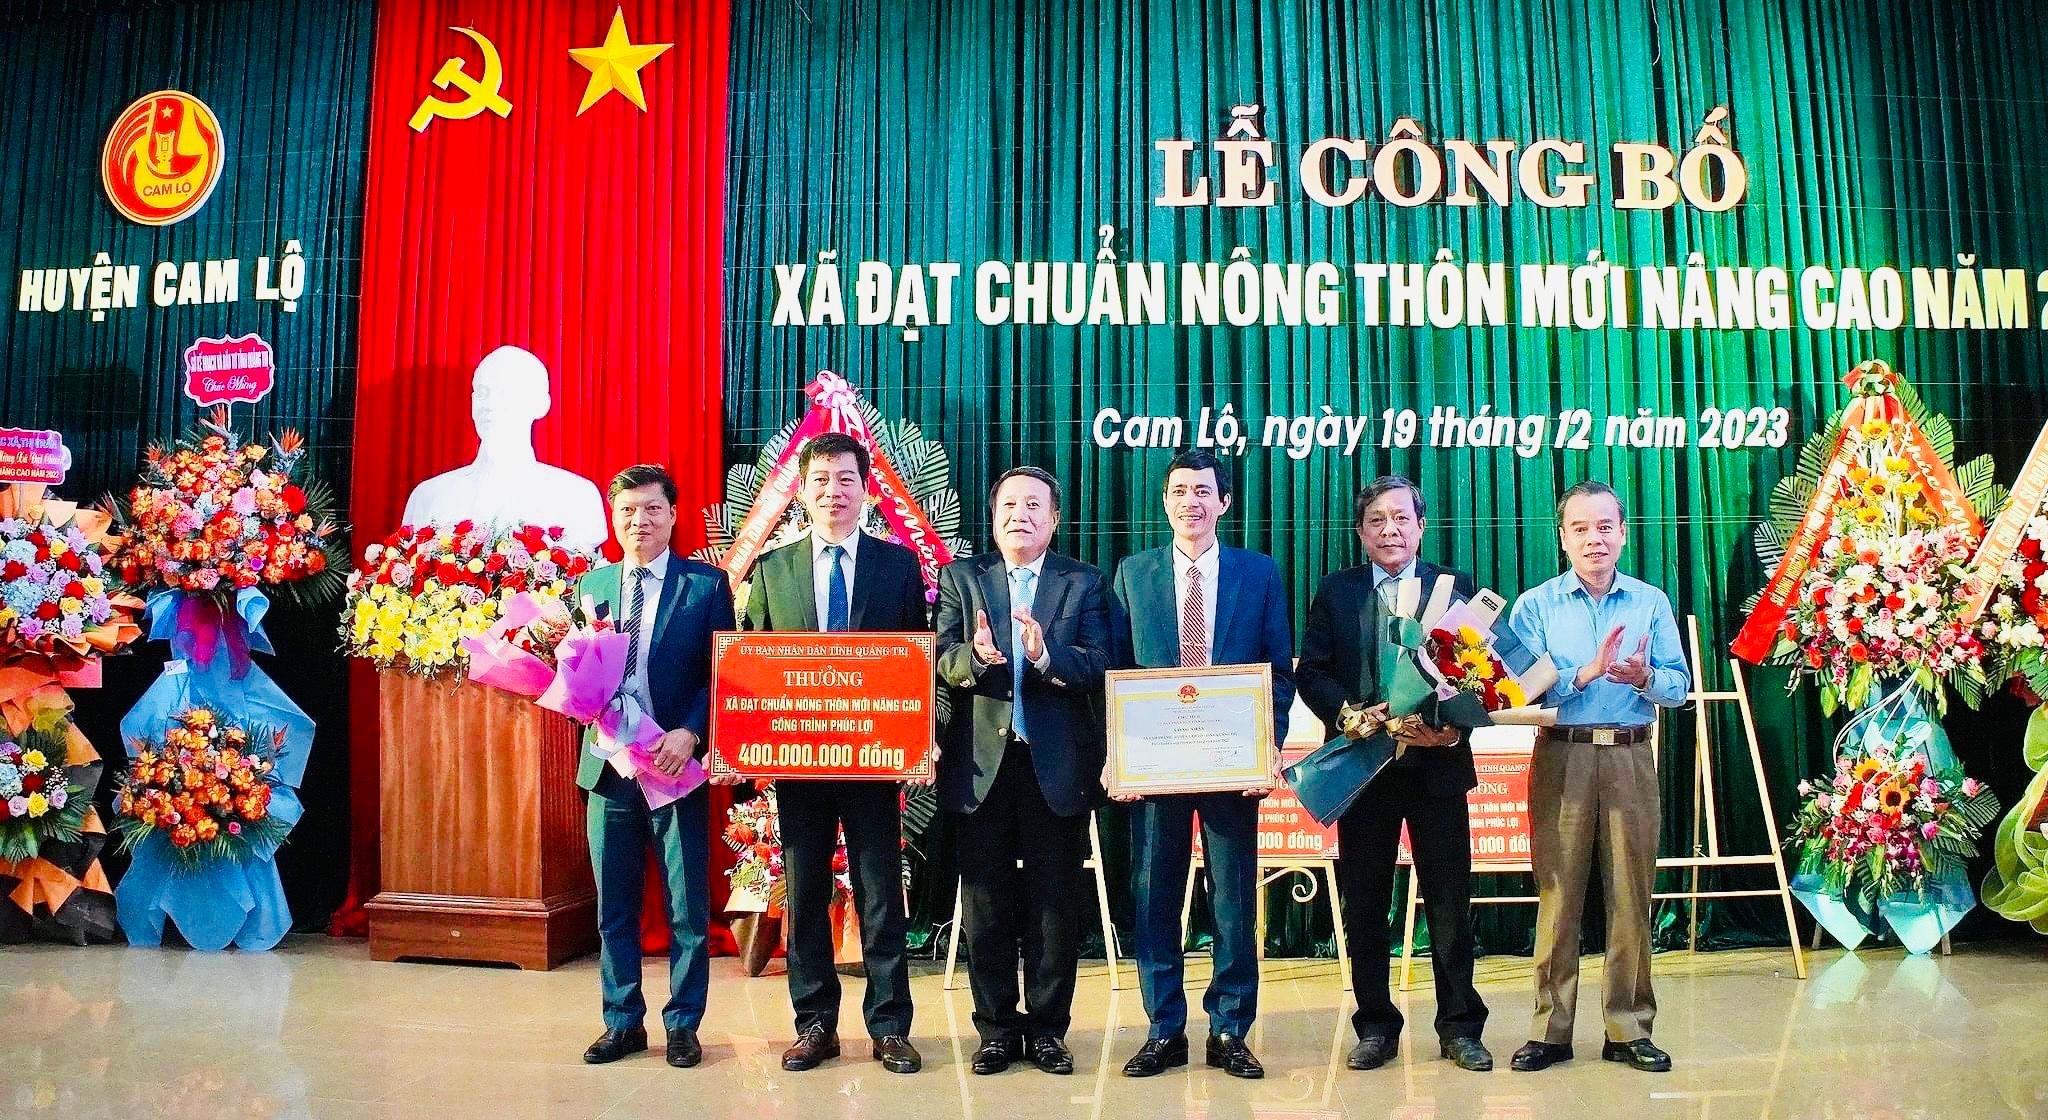 Lễ công bố xã Cam Thành đạt chuẩn nông thôn mới nâng cao năm 2022